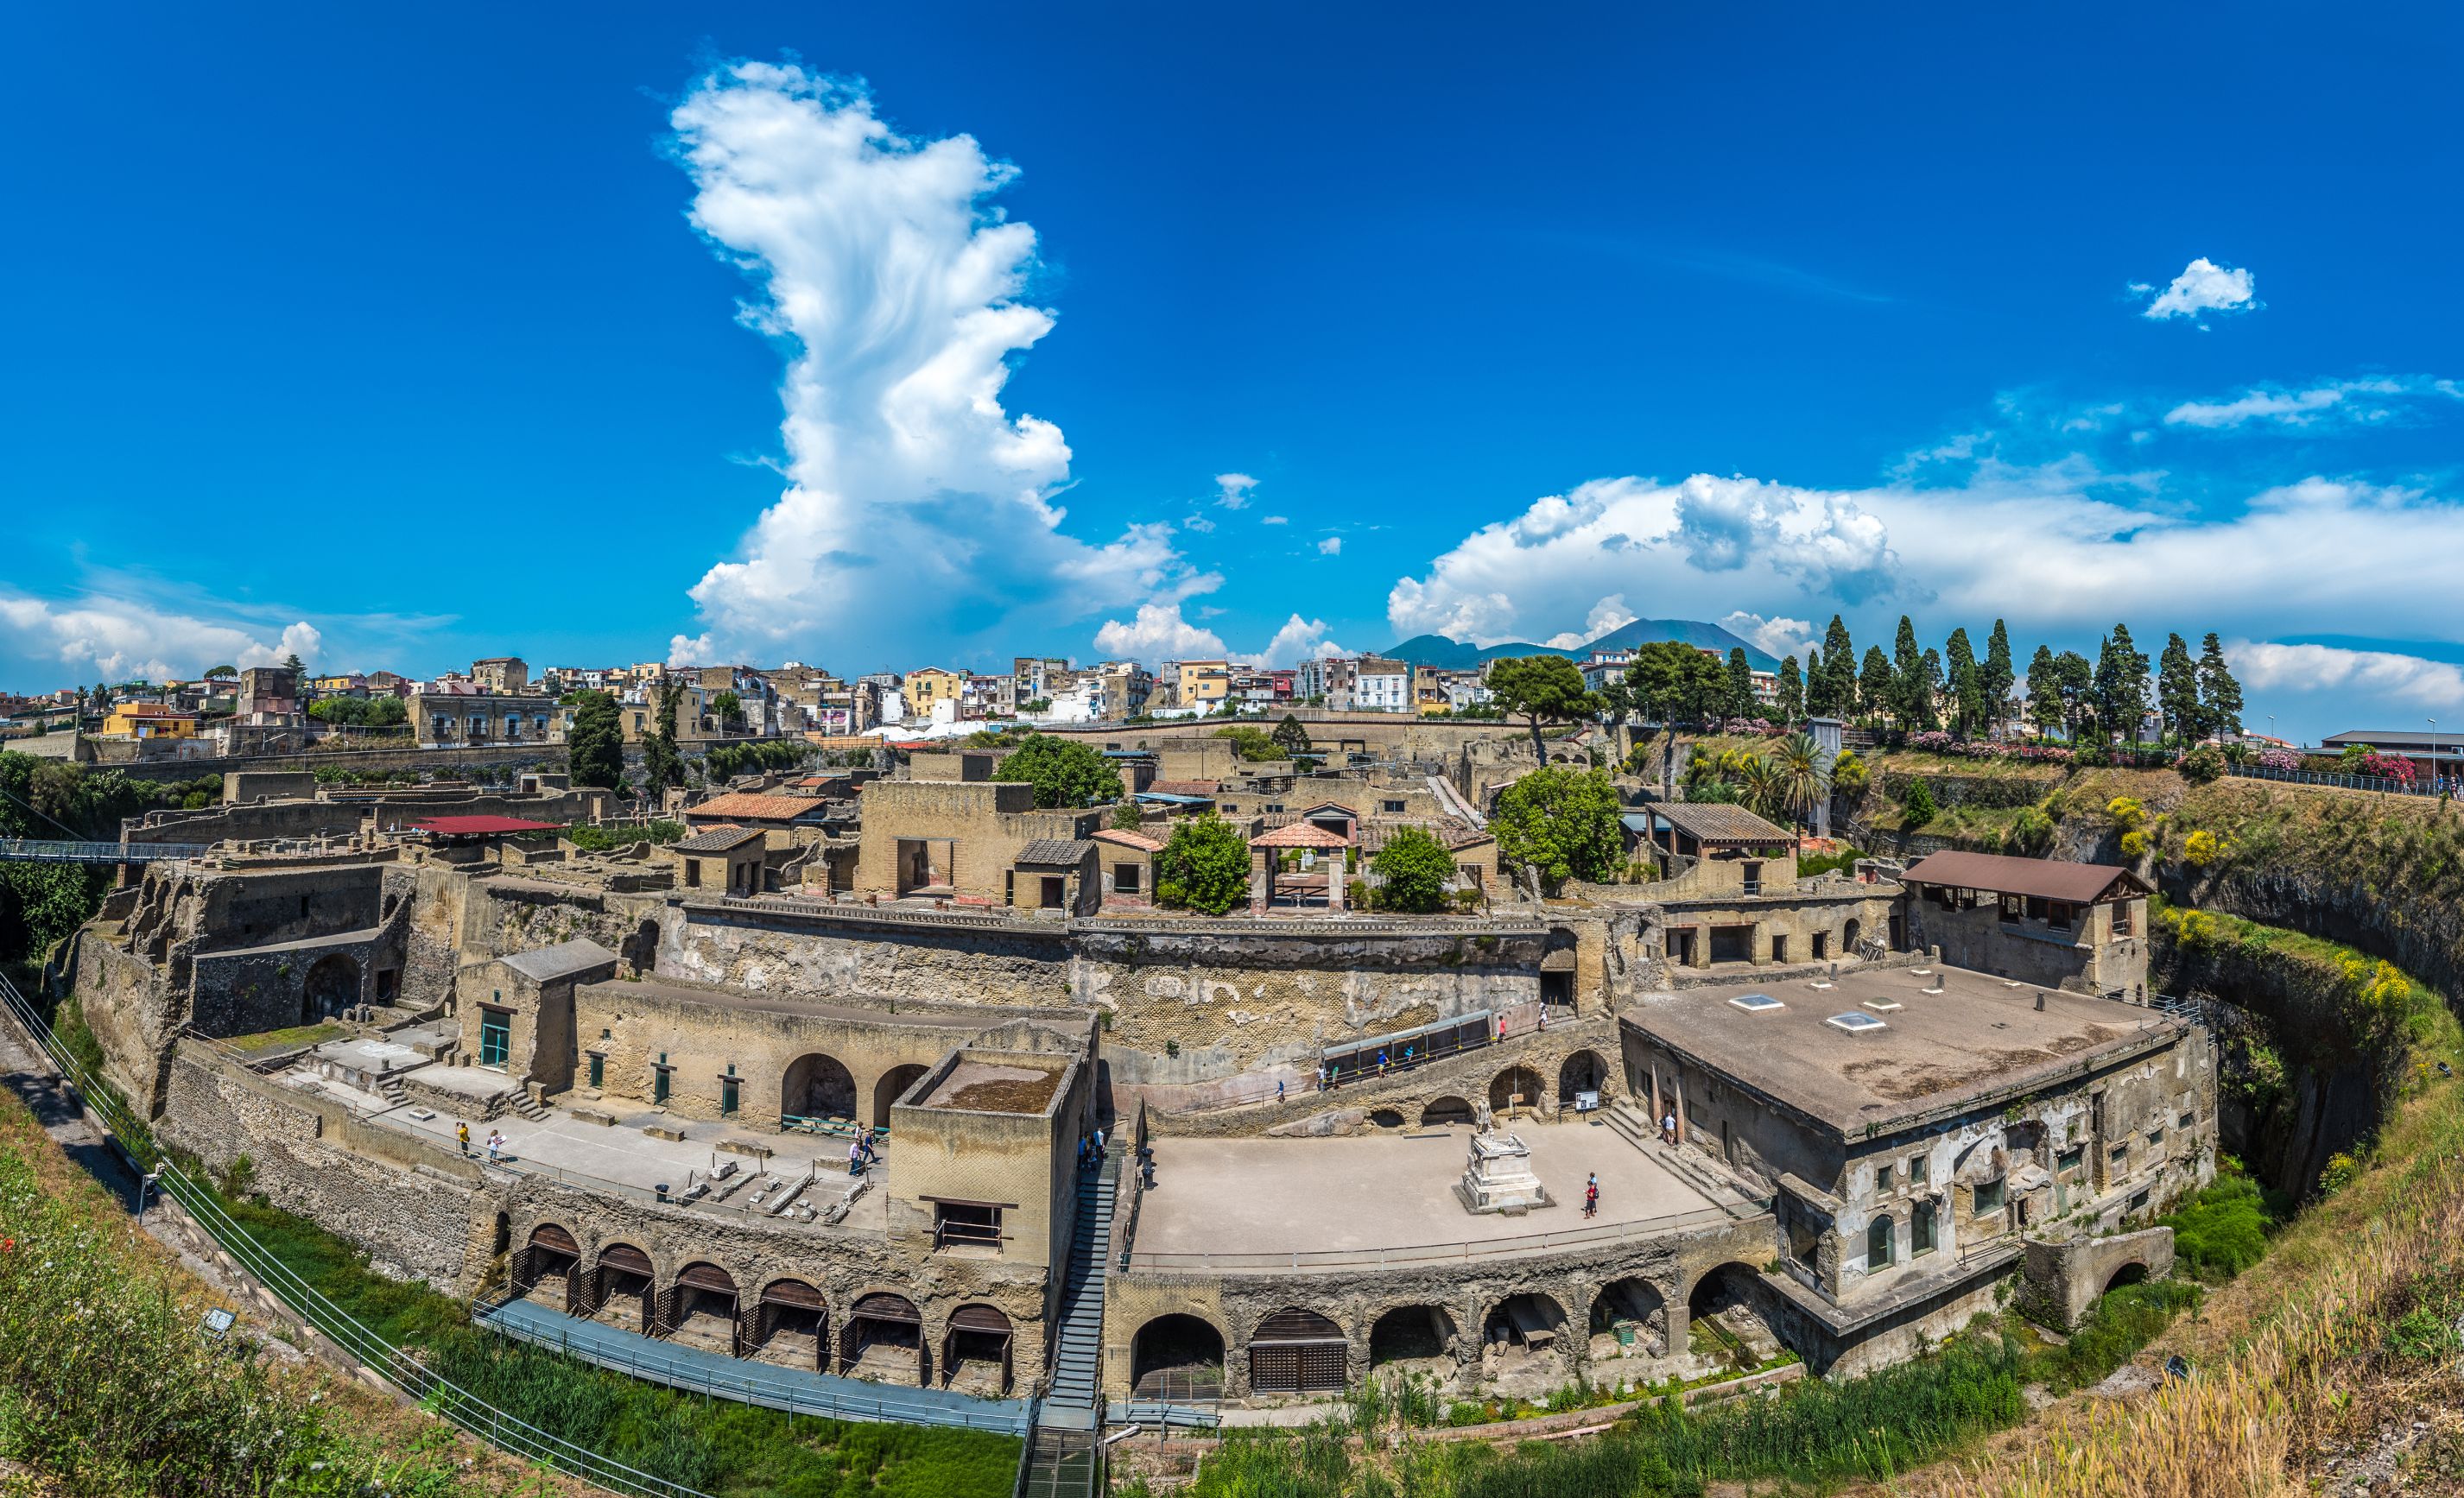 Panoramic view of Herculaneum ancient roman ruins